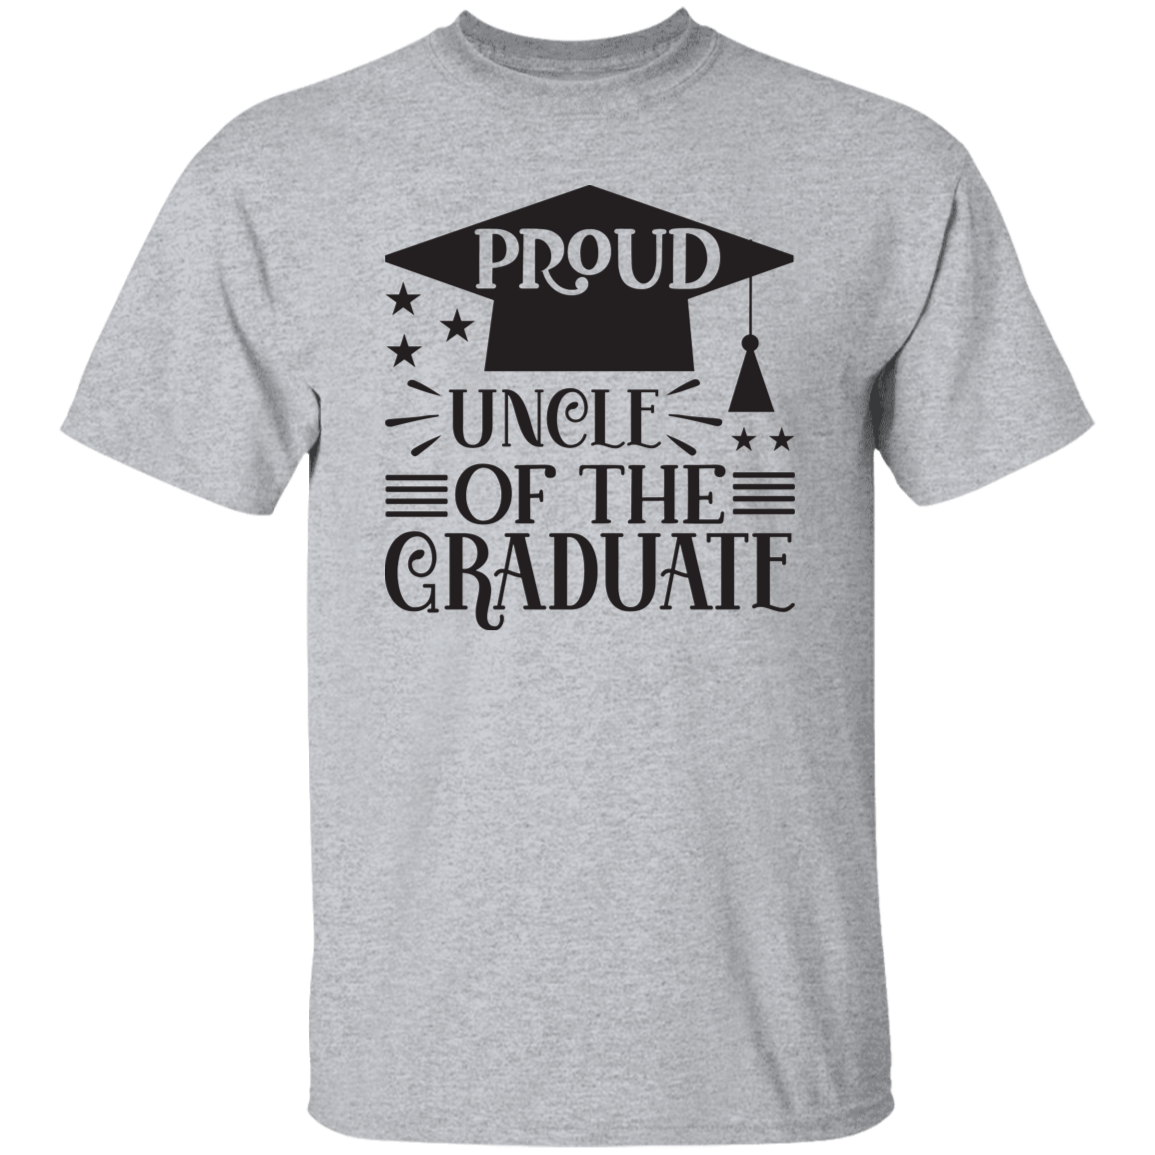 Proud Uncle of the Graduate G500 5.3 oz. T-Shirt